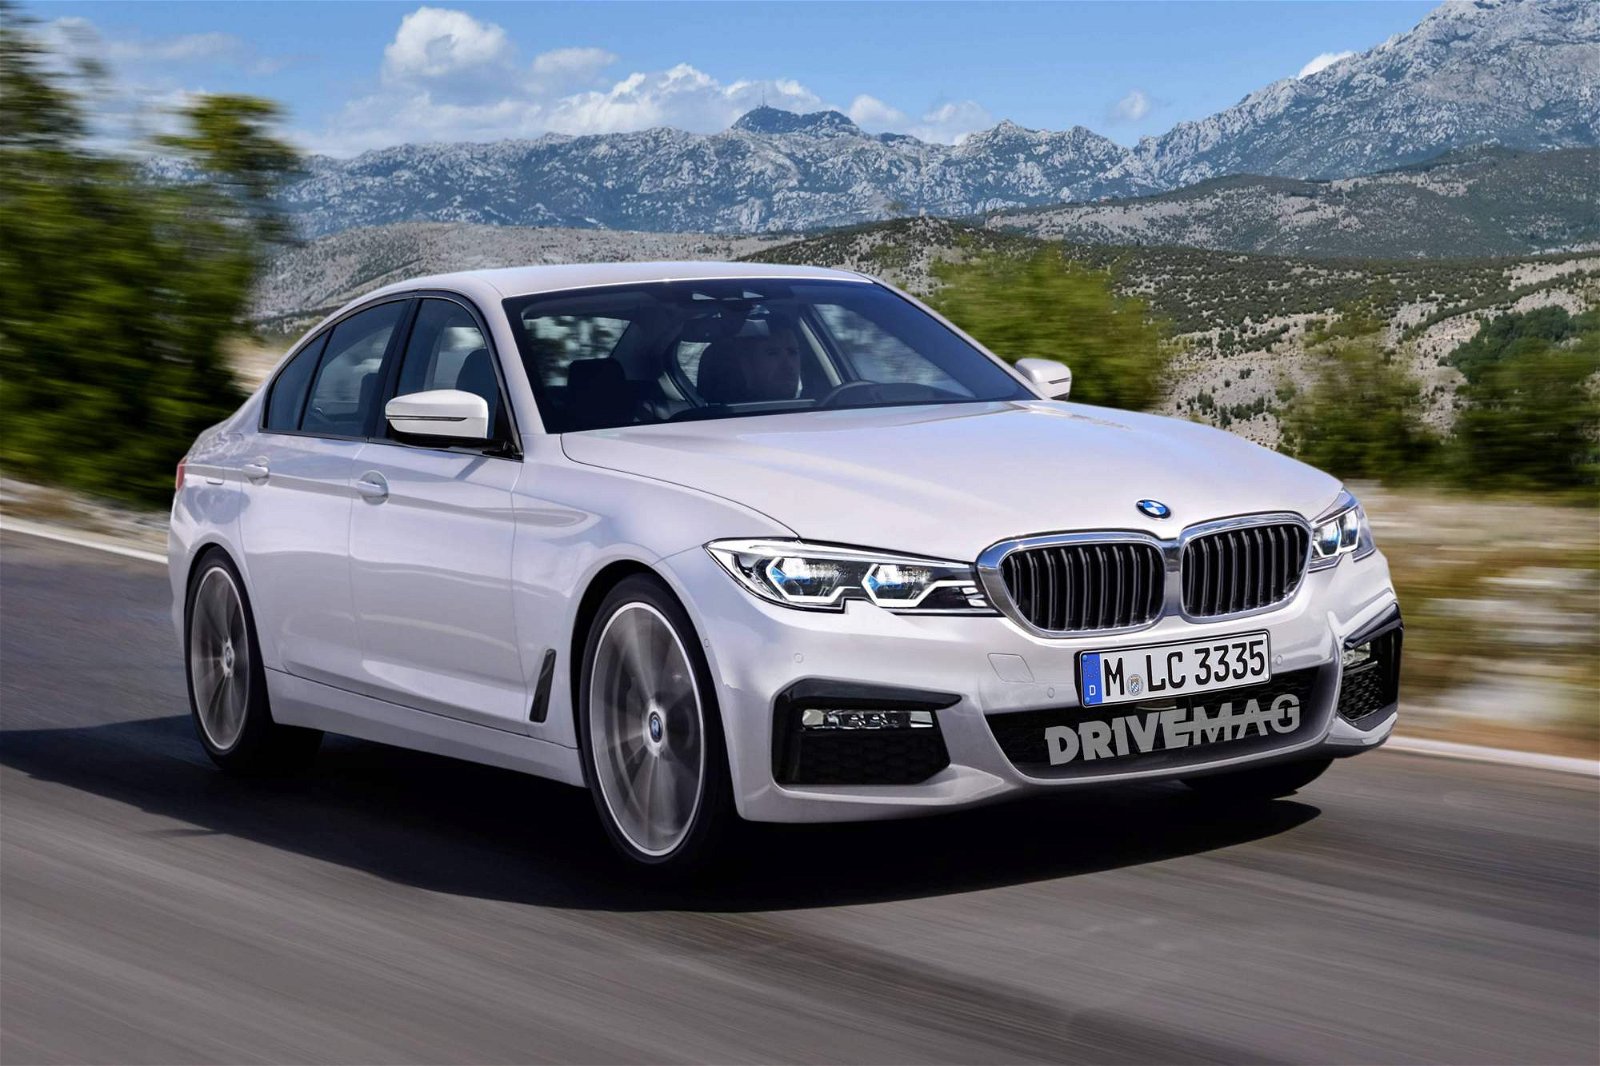 2019-BMW-3-Series-G20-sedan-renderings-4-9914